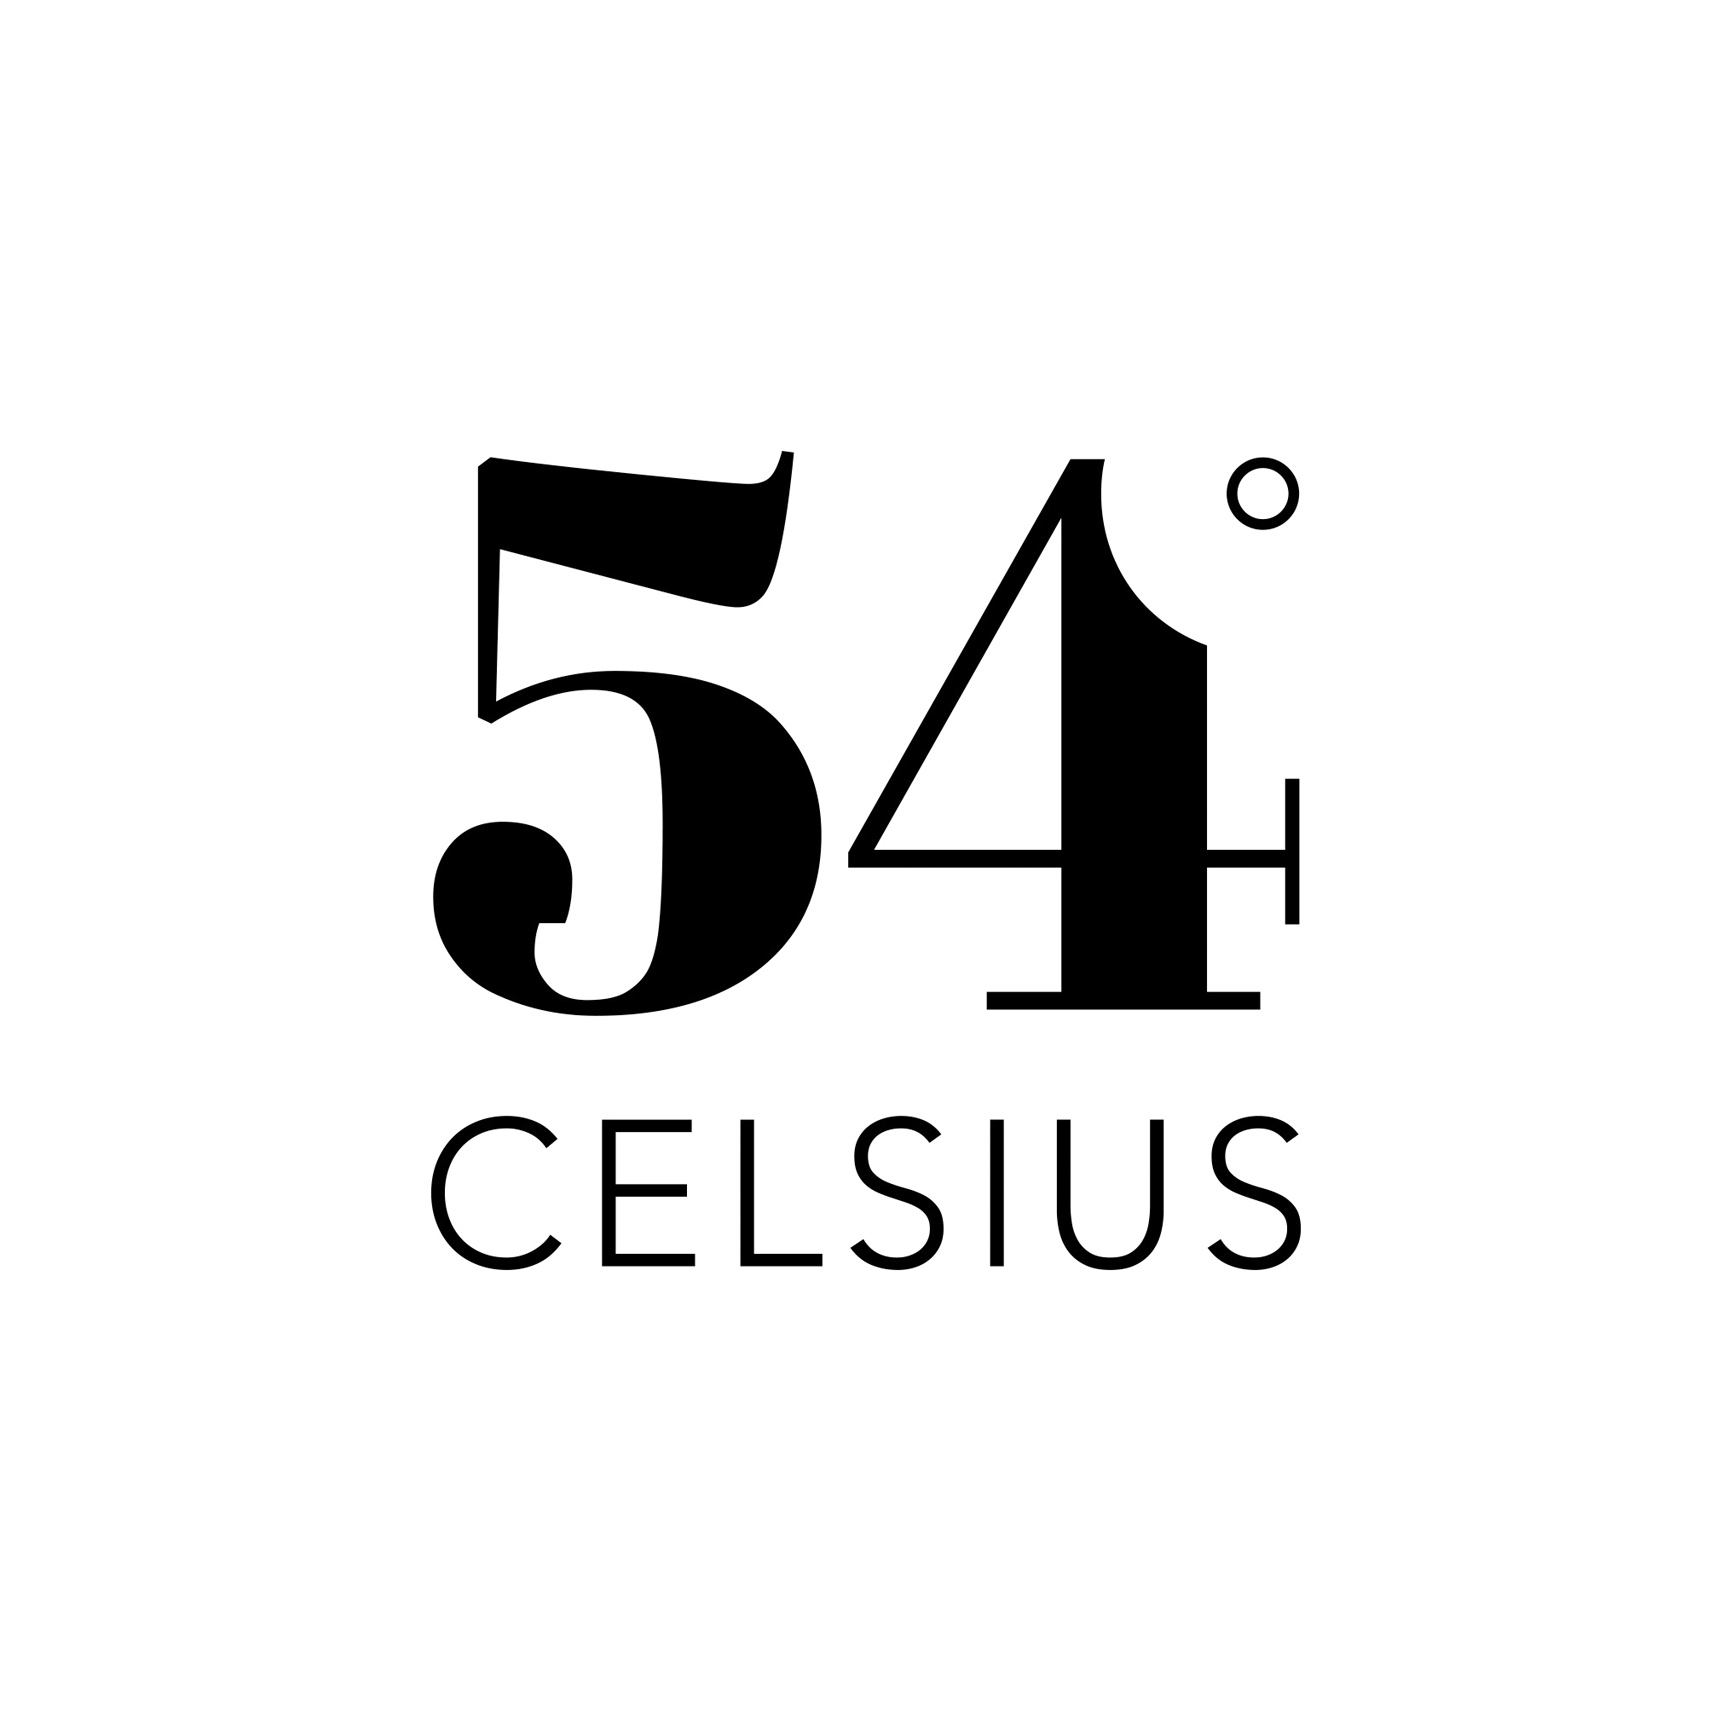 54 Celsius logo